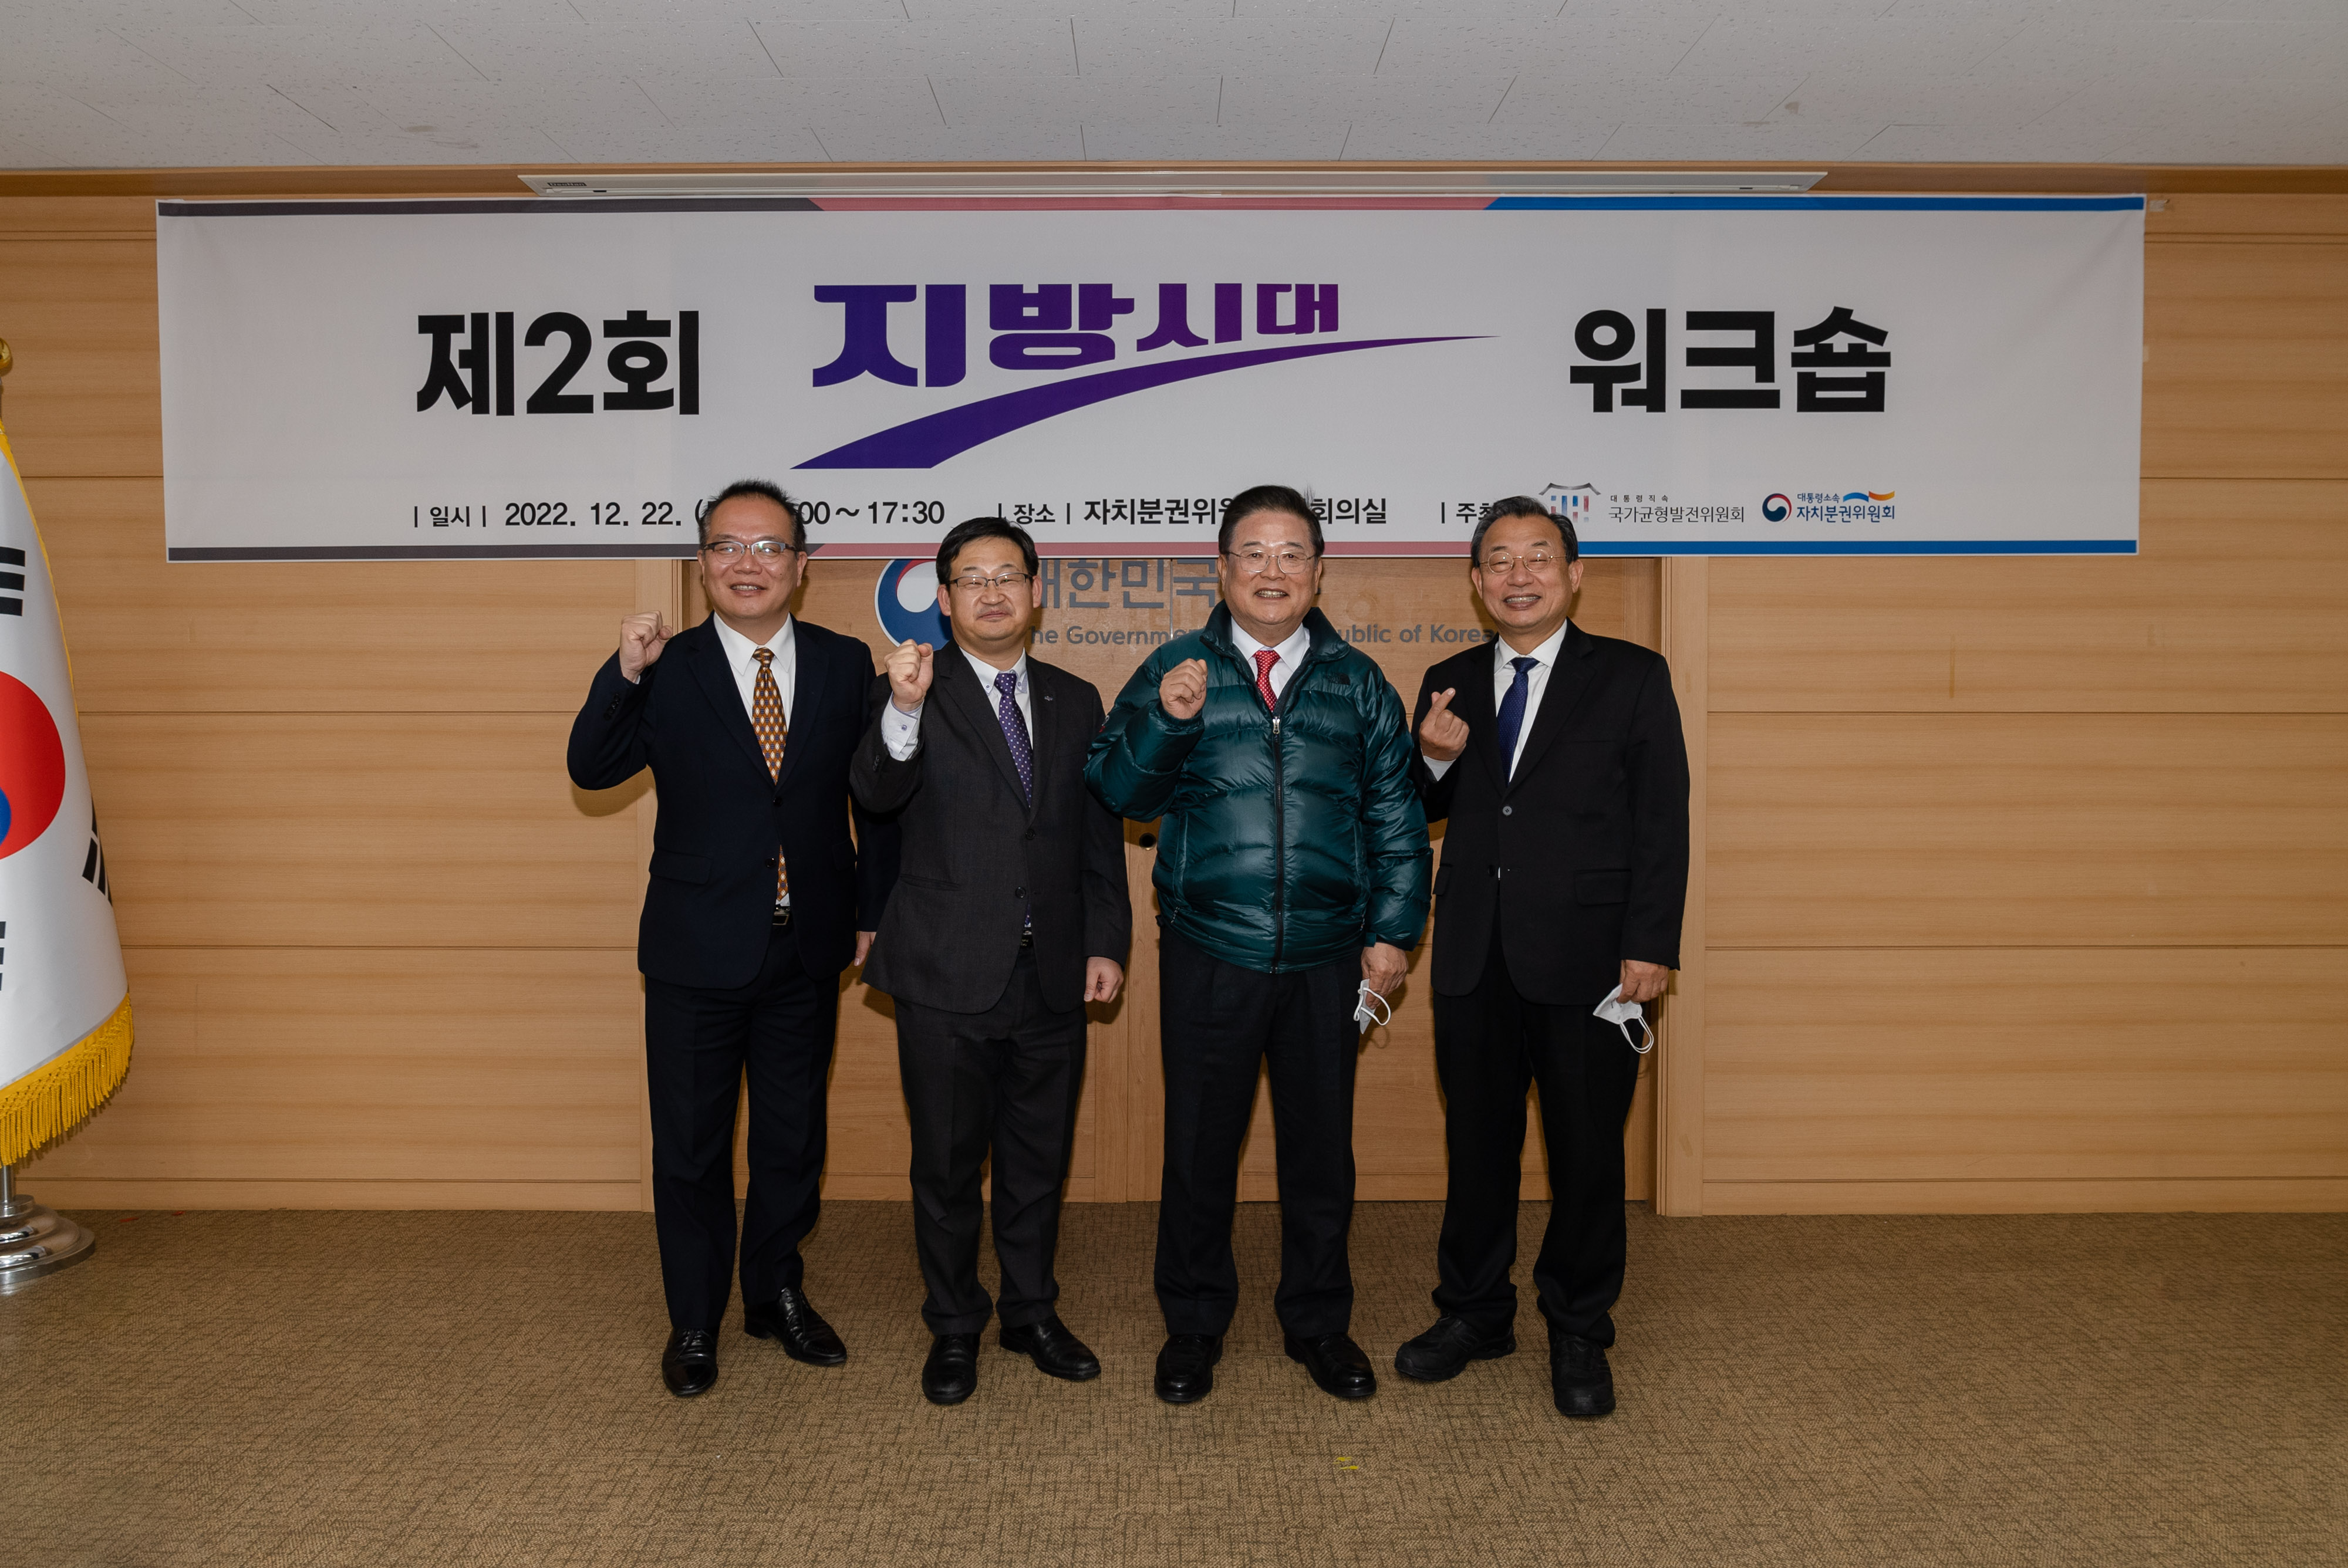 12월 22일 자치분권위원회 대회의실에서 제2회 지방시대 워크숍을 개최하였다.(3)